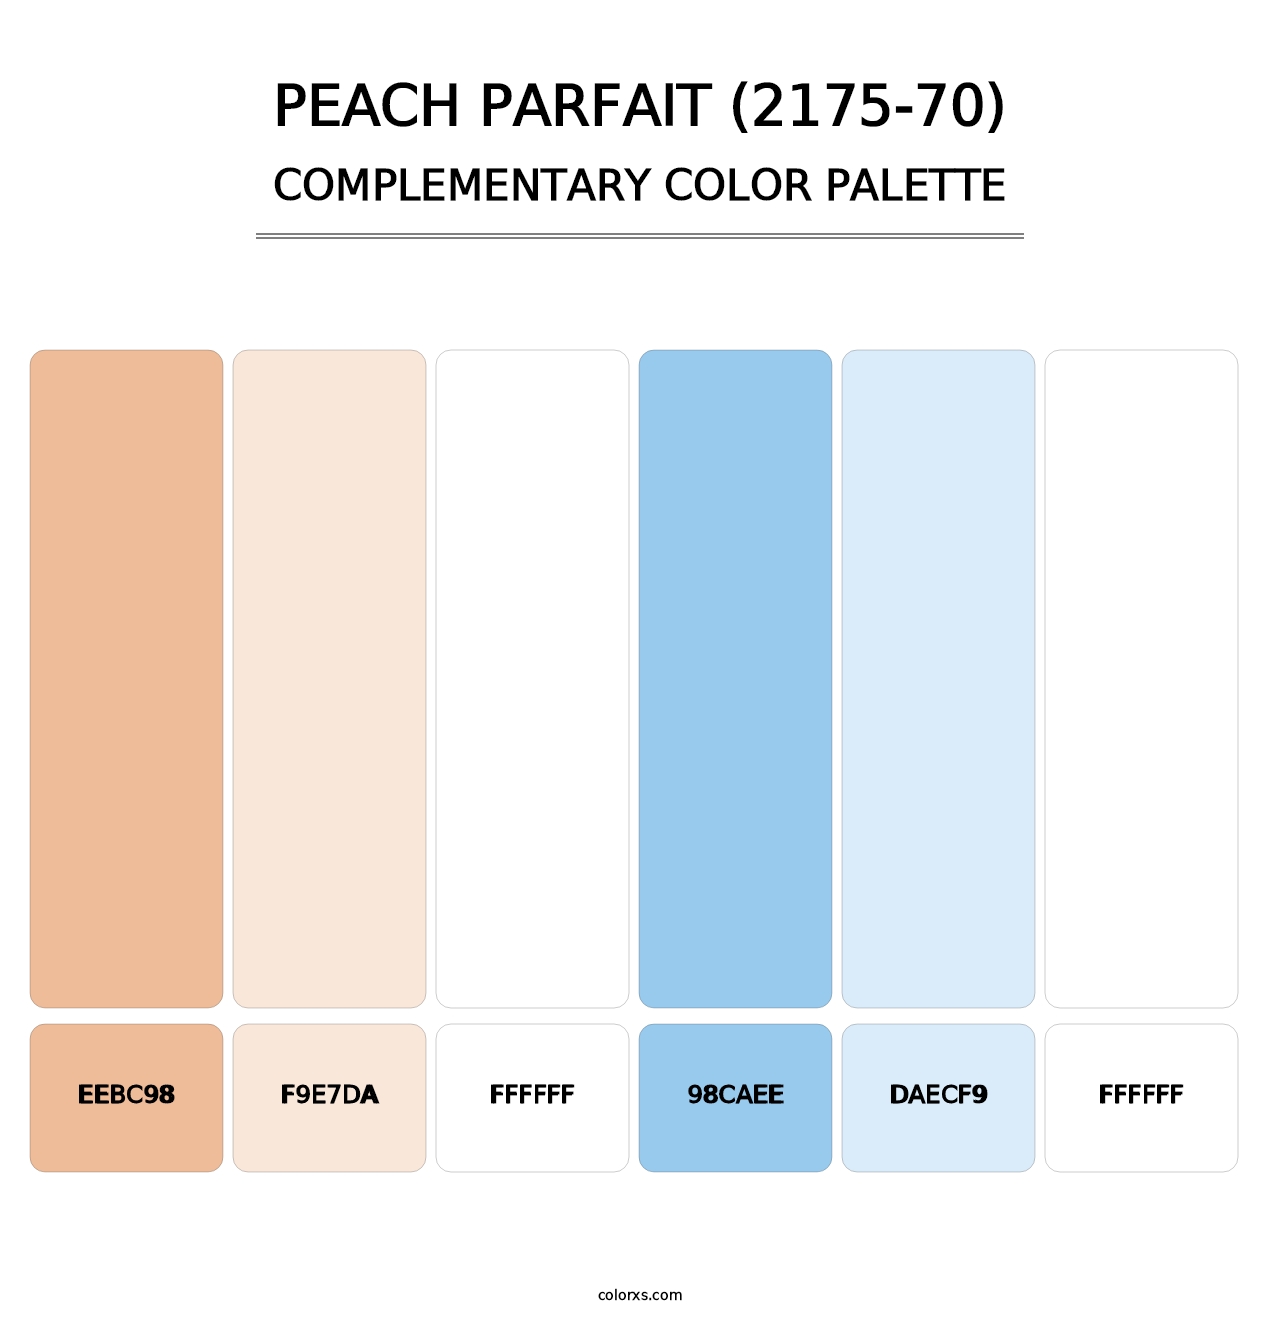 Peach Parfait (2175-70) - Complementary Color Palette